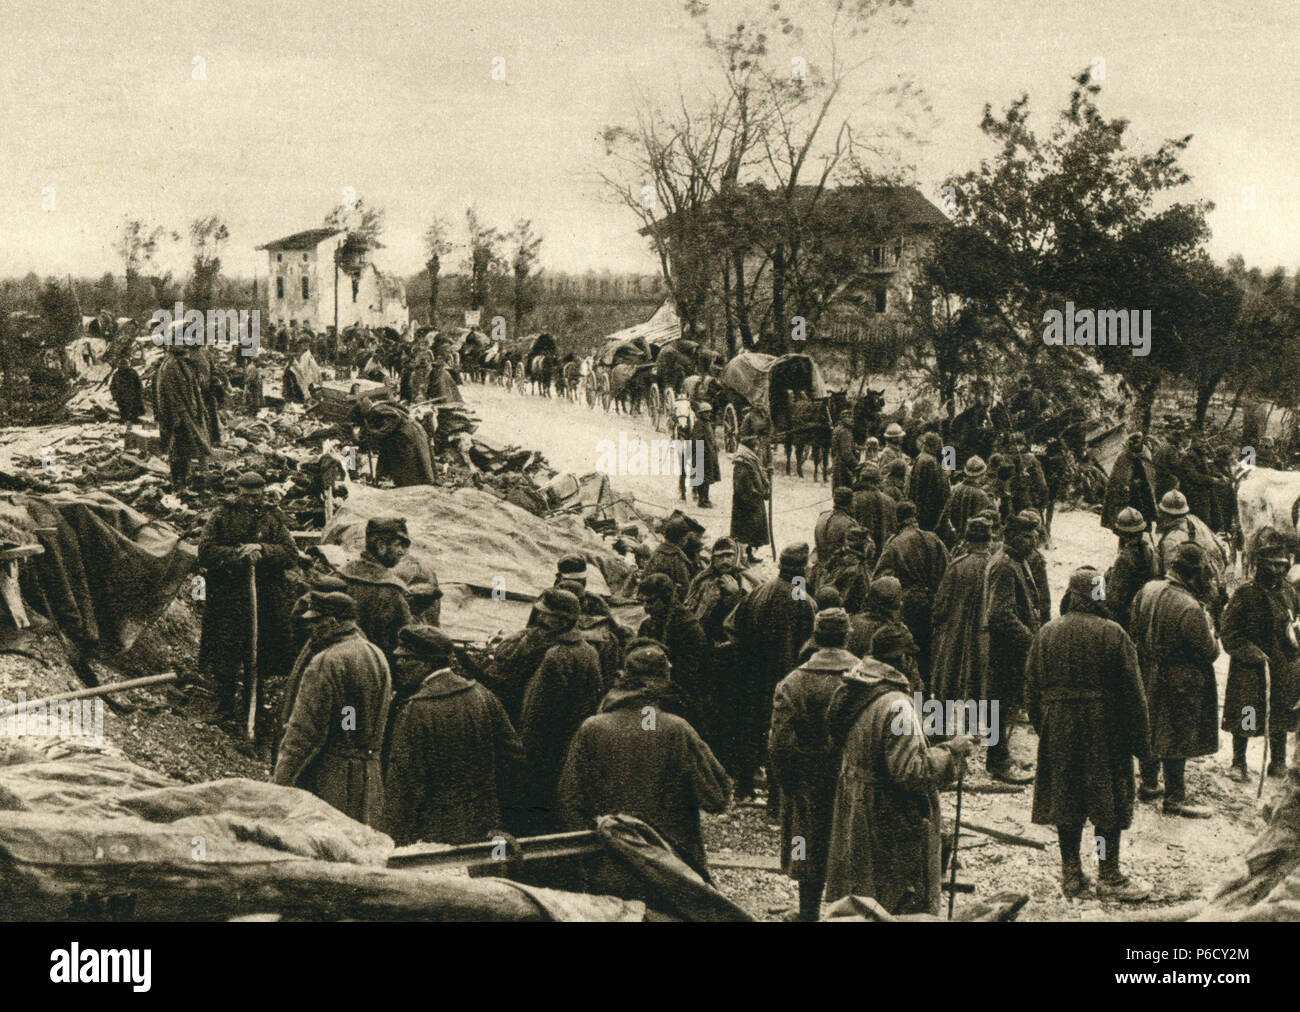 italy, vormarsch, eastern front, ww1, wwi, world war one Stock Photo